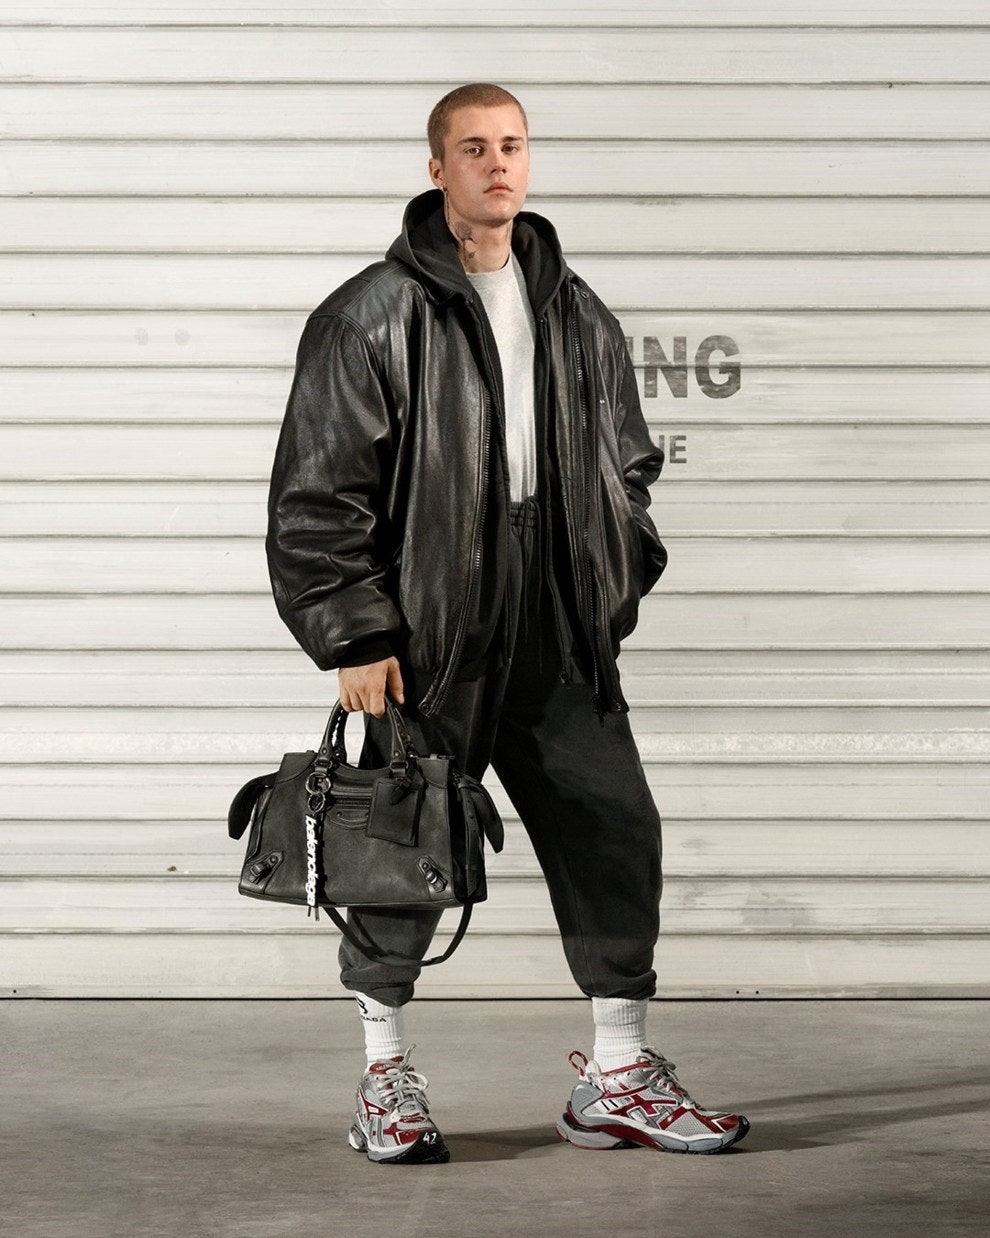 Джастин Бибер в рекламной кампании Balenciaga осеньзима 2021